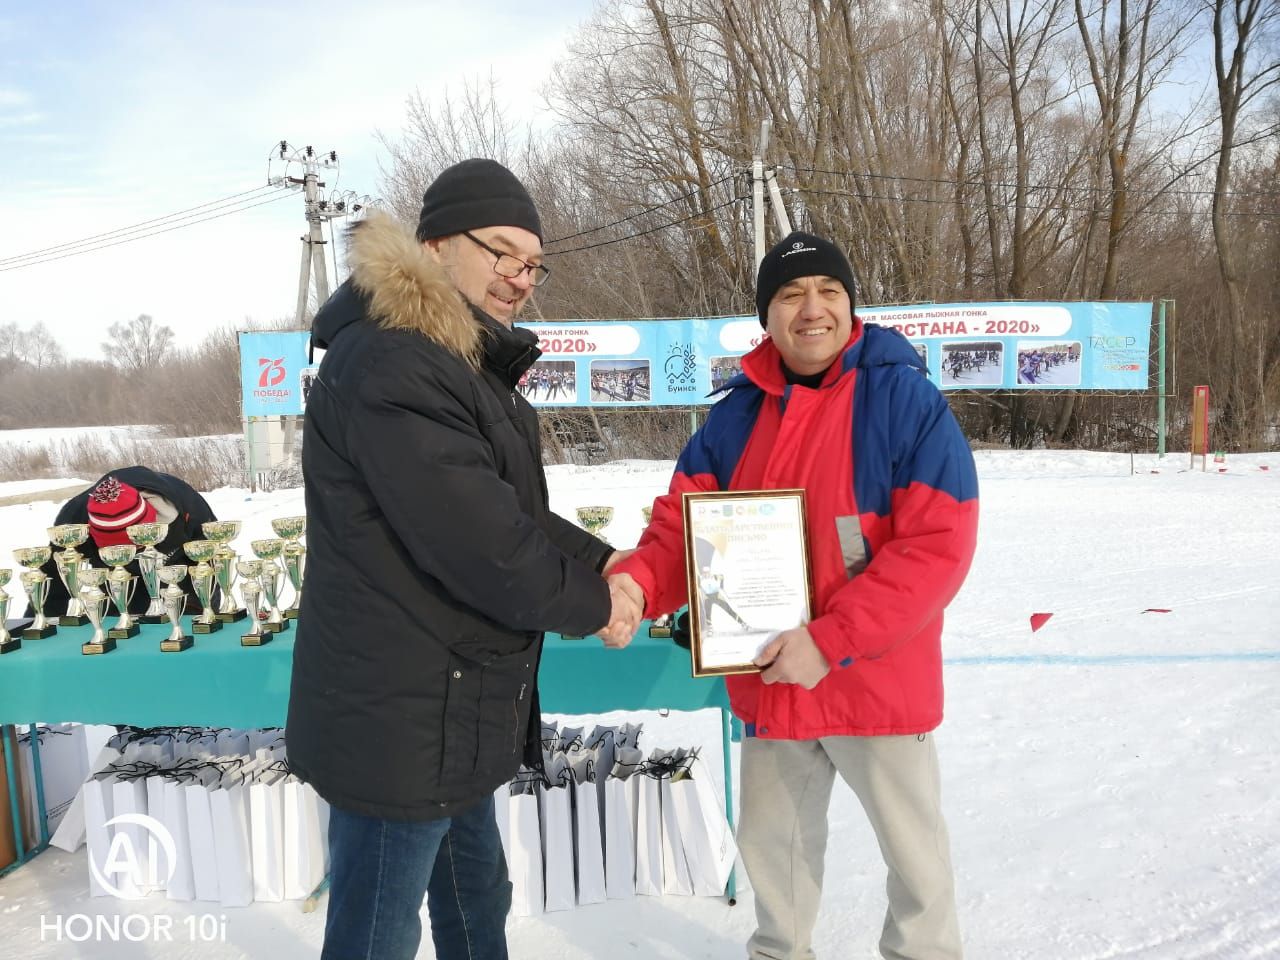 В Буинске проходят лыжные соревнования по лыжным гонкам  Памяти Сабирзяна Нафикова